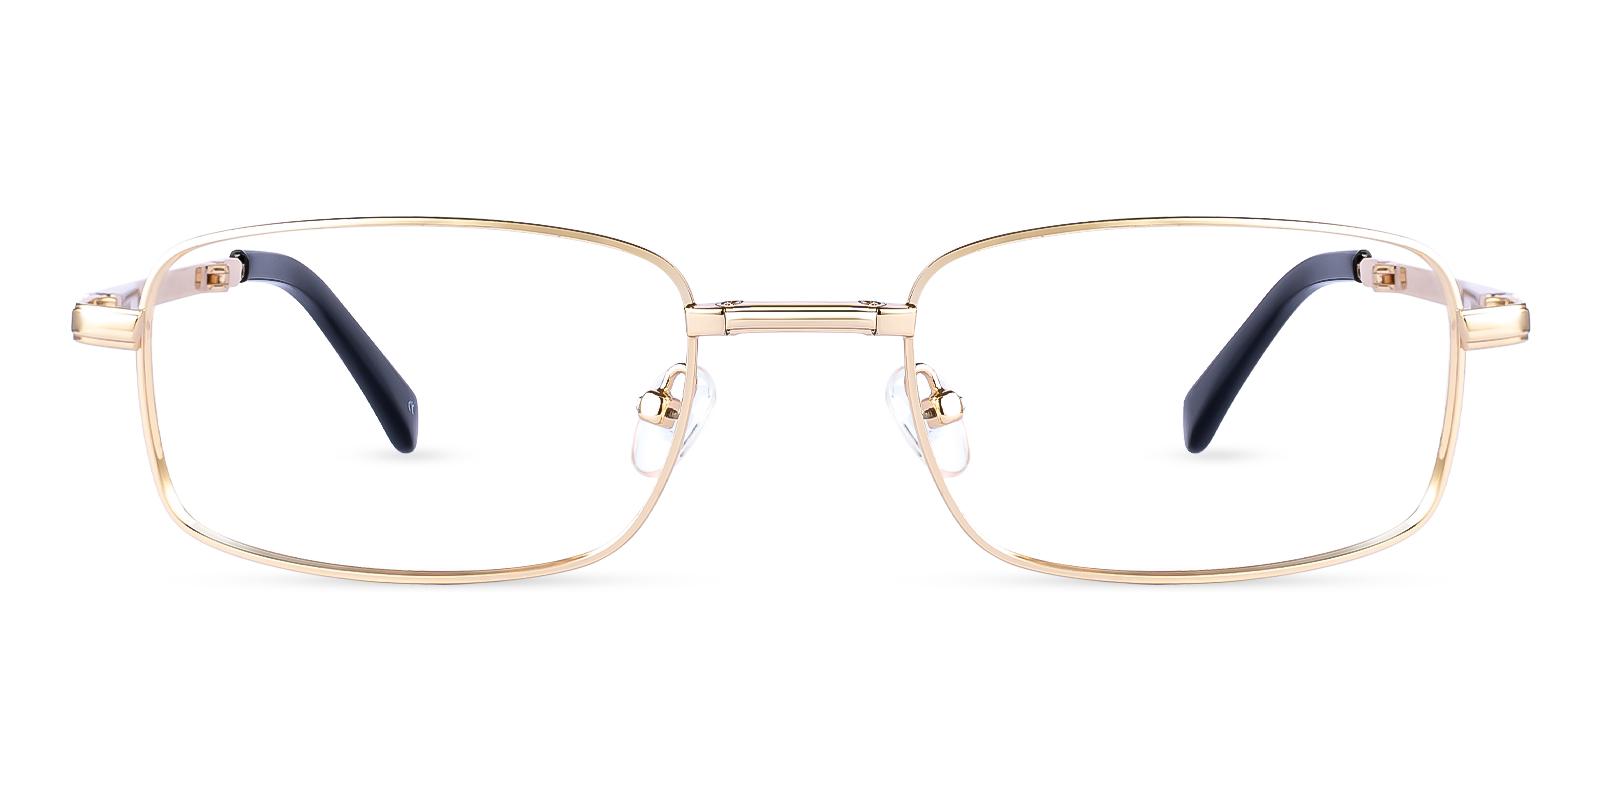 Sebastian Gold Metal Eyeglasses , Foldable , NosePads Frames from ABBE Glasses